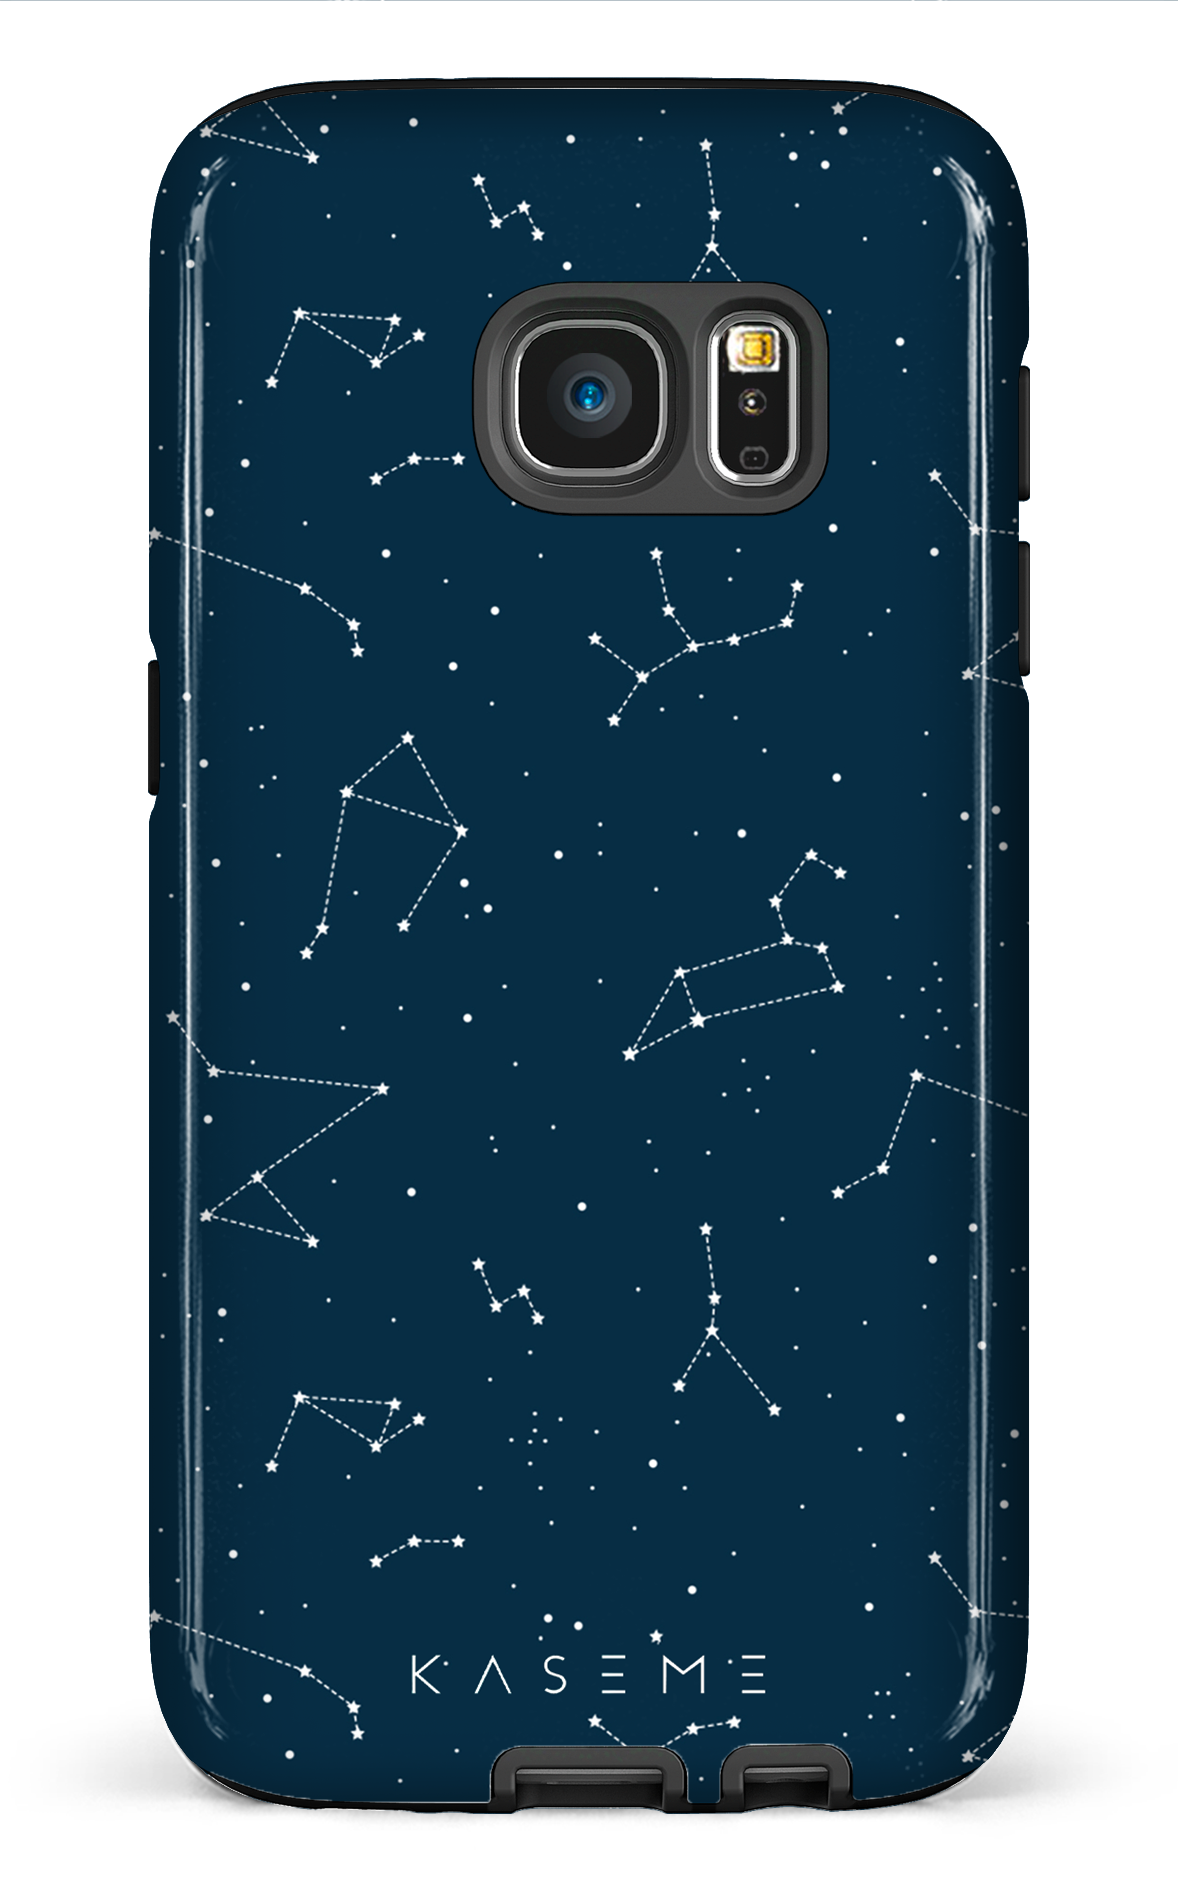 Cosmos - Galaxy S7